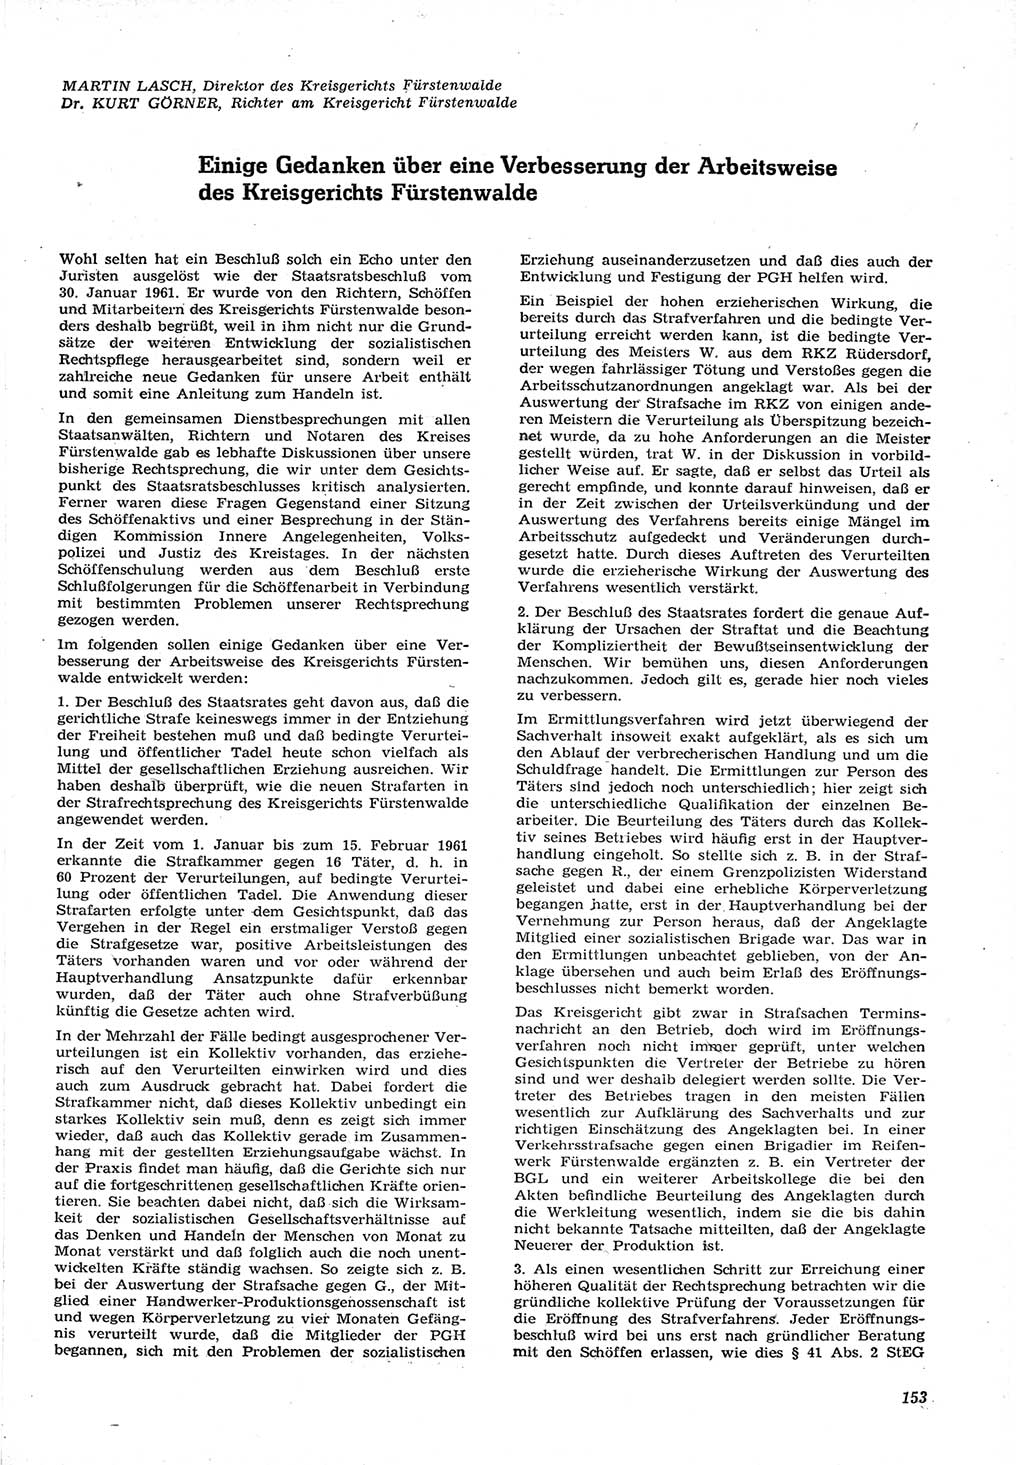 Neue Justiz (NJ), Zeitschrift für Recht und Rechtswissenschaft [Deutsche Demokratische Republik (DDR)], 15. Jahrgang 1961, Seite 153 (NJ DDR 1961, S. 153)